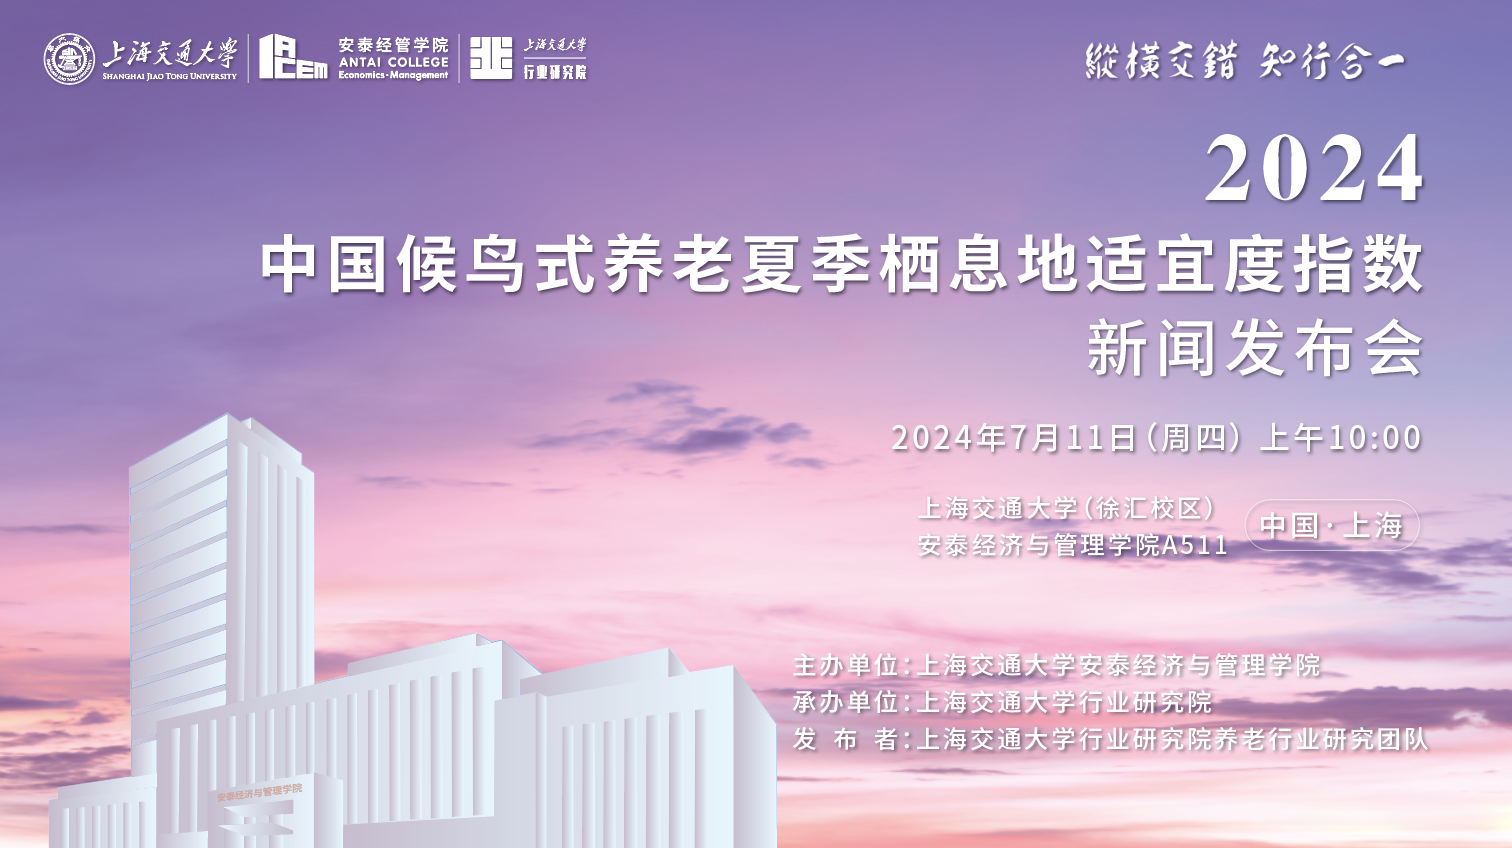 上海交通大学发布《2024中国候鸟式养老夏季栖息地适宜度指数》